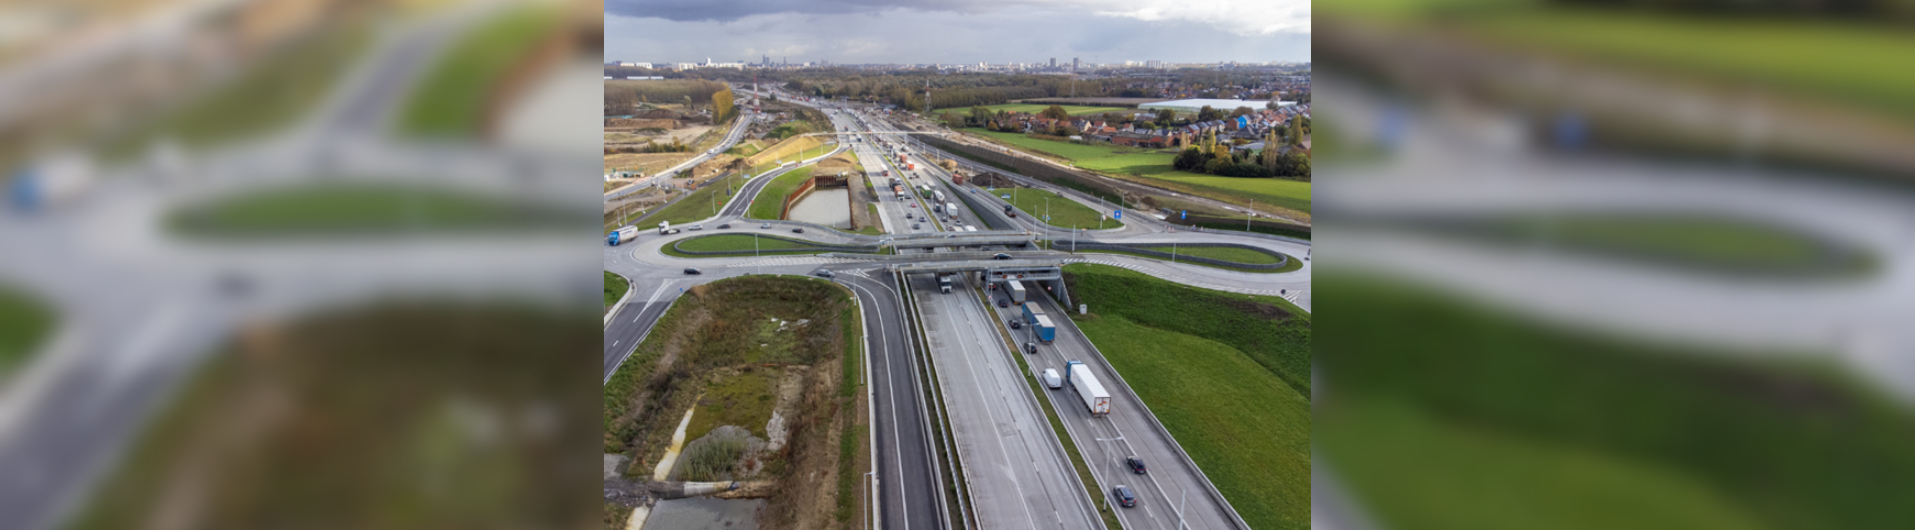 Ο σύνδεσμος Oosterweel της Αμβέρσας: Προς μια βιώσιμη κινητικότητα